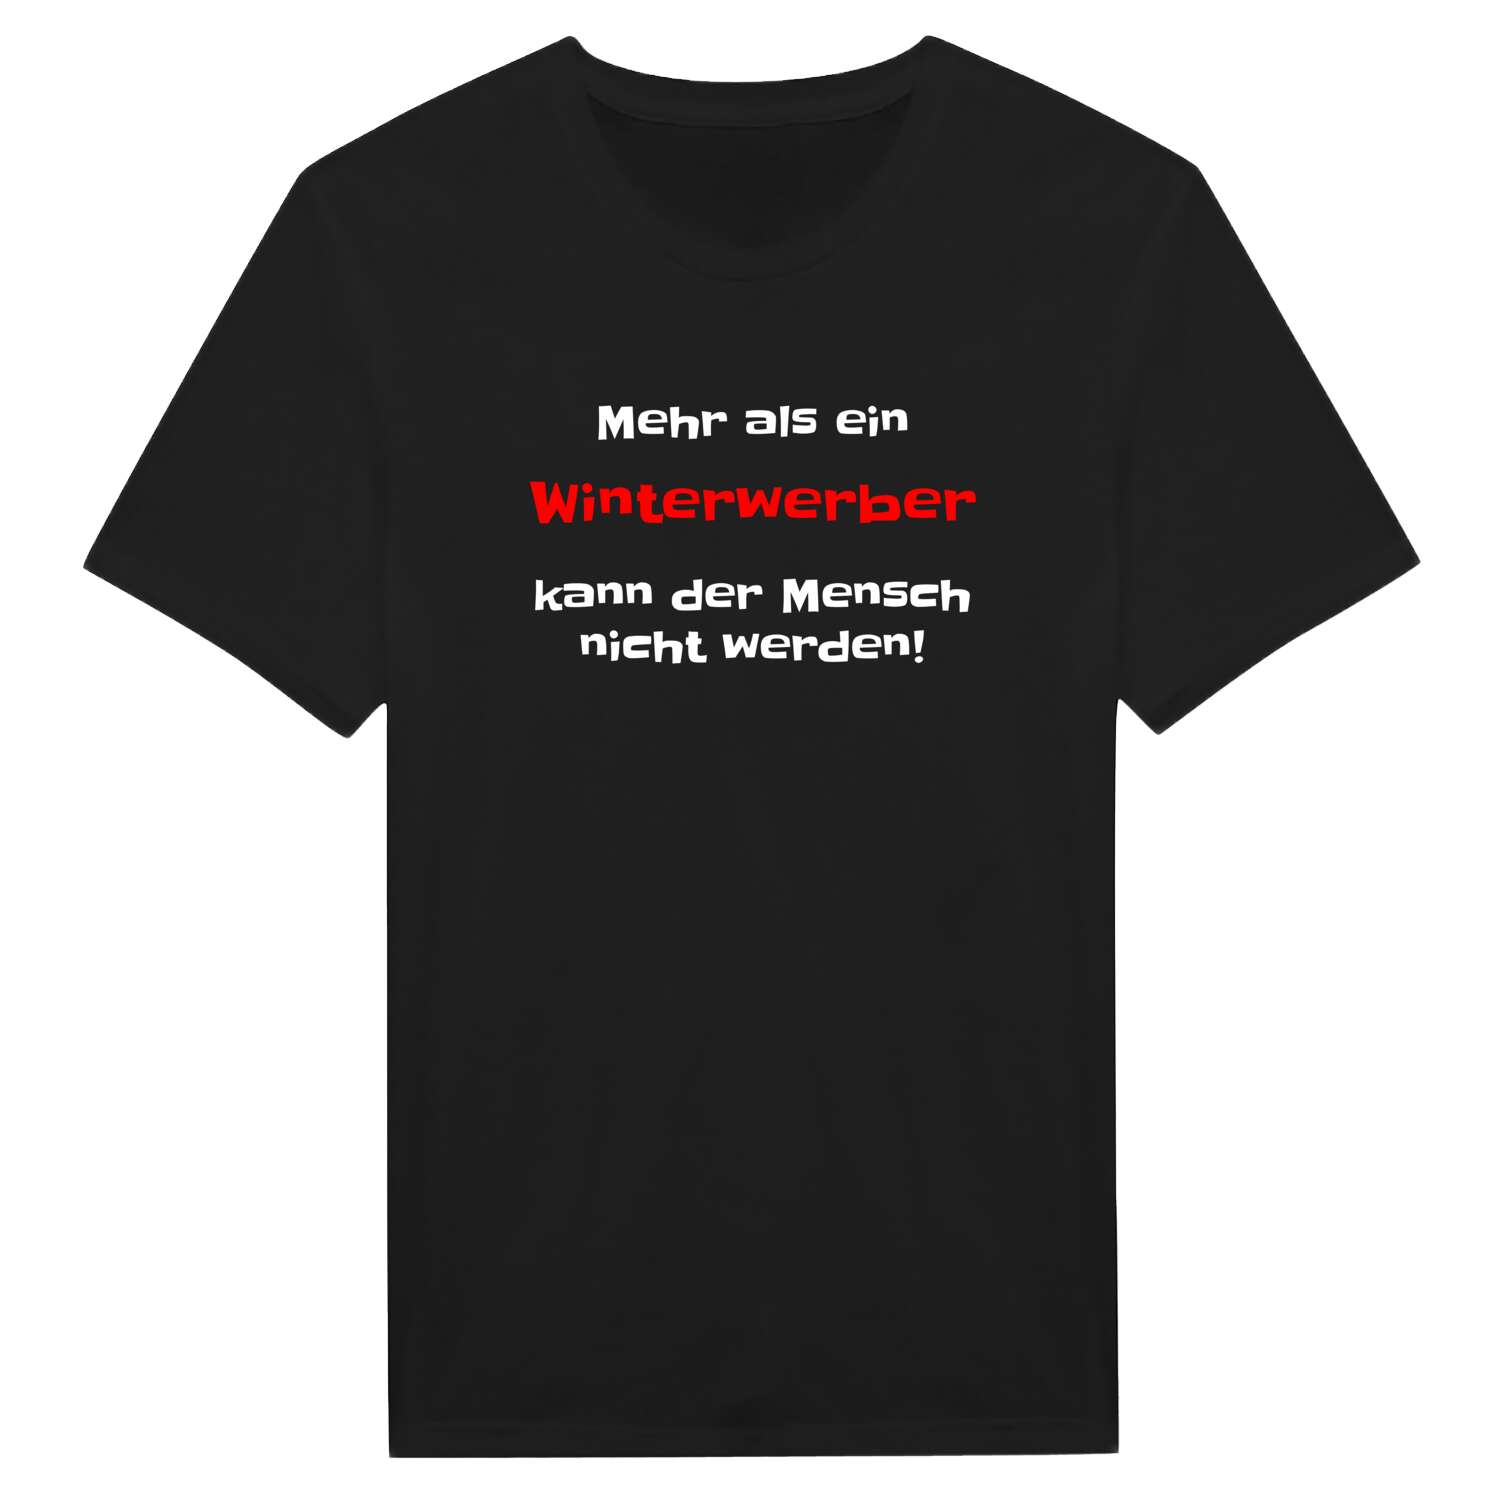 Winterwerb T-Shirt »Mehr als ein«